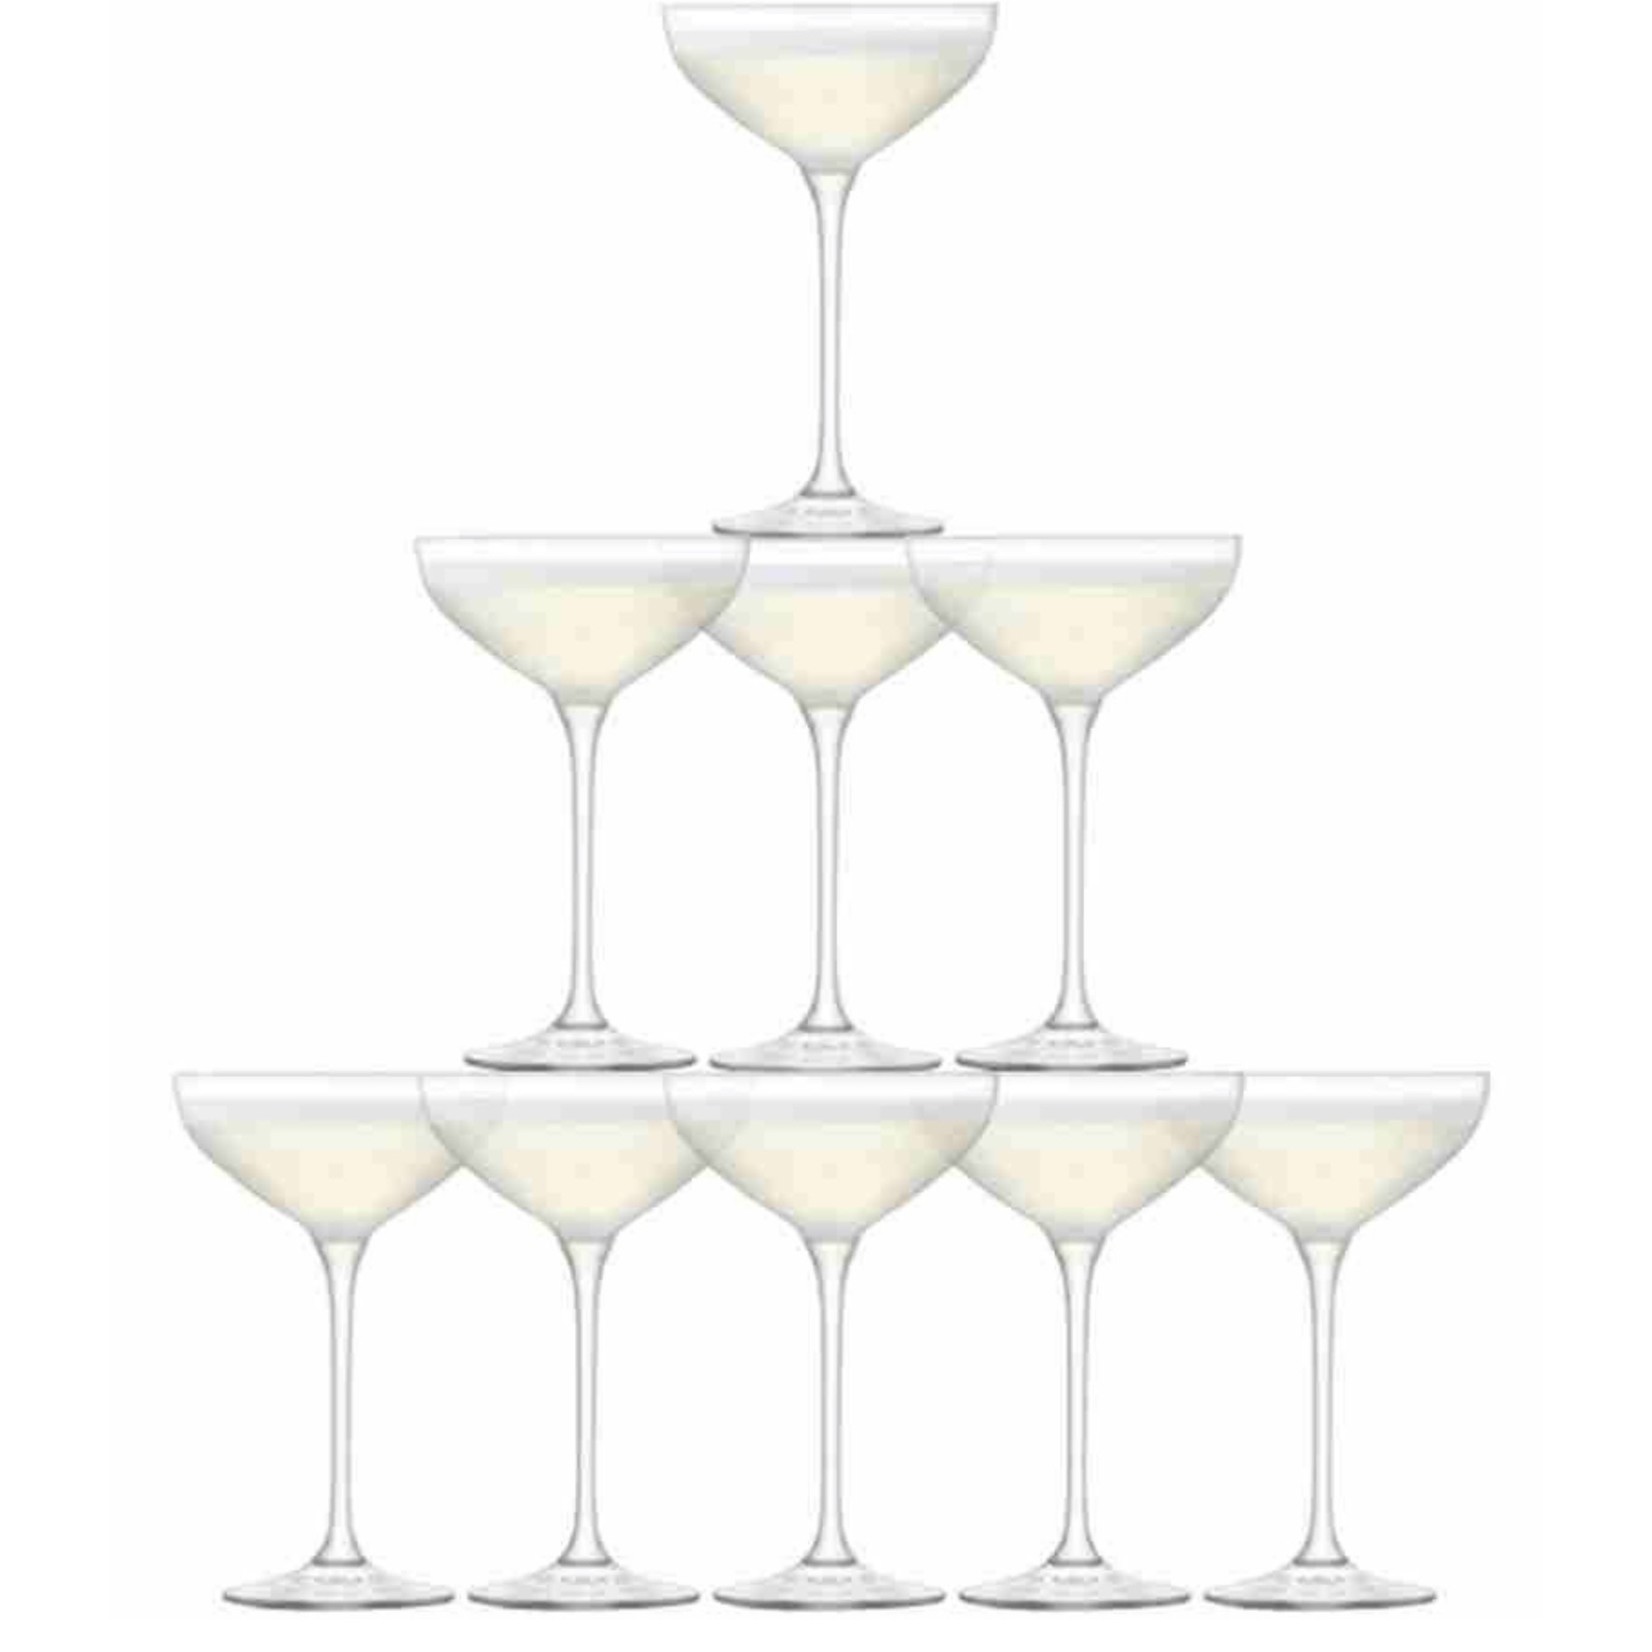 DAVID SHAW LSA INTERNATIONAL Old Fashioned Champagne Glass